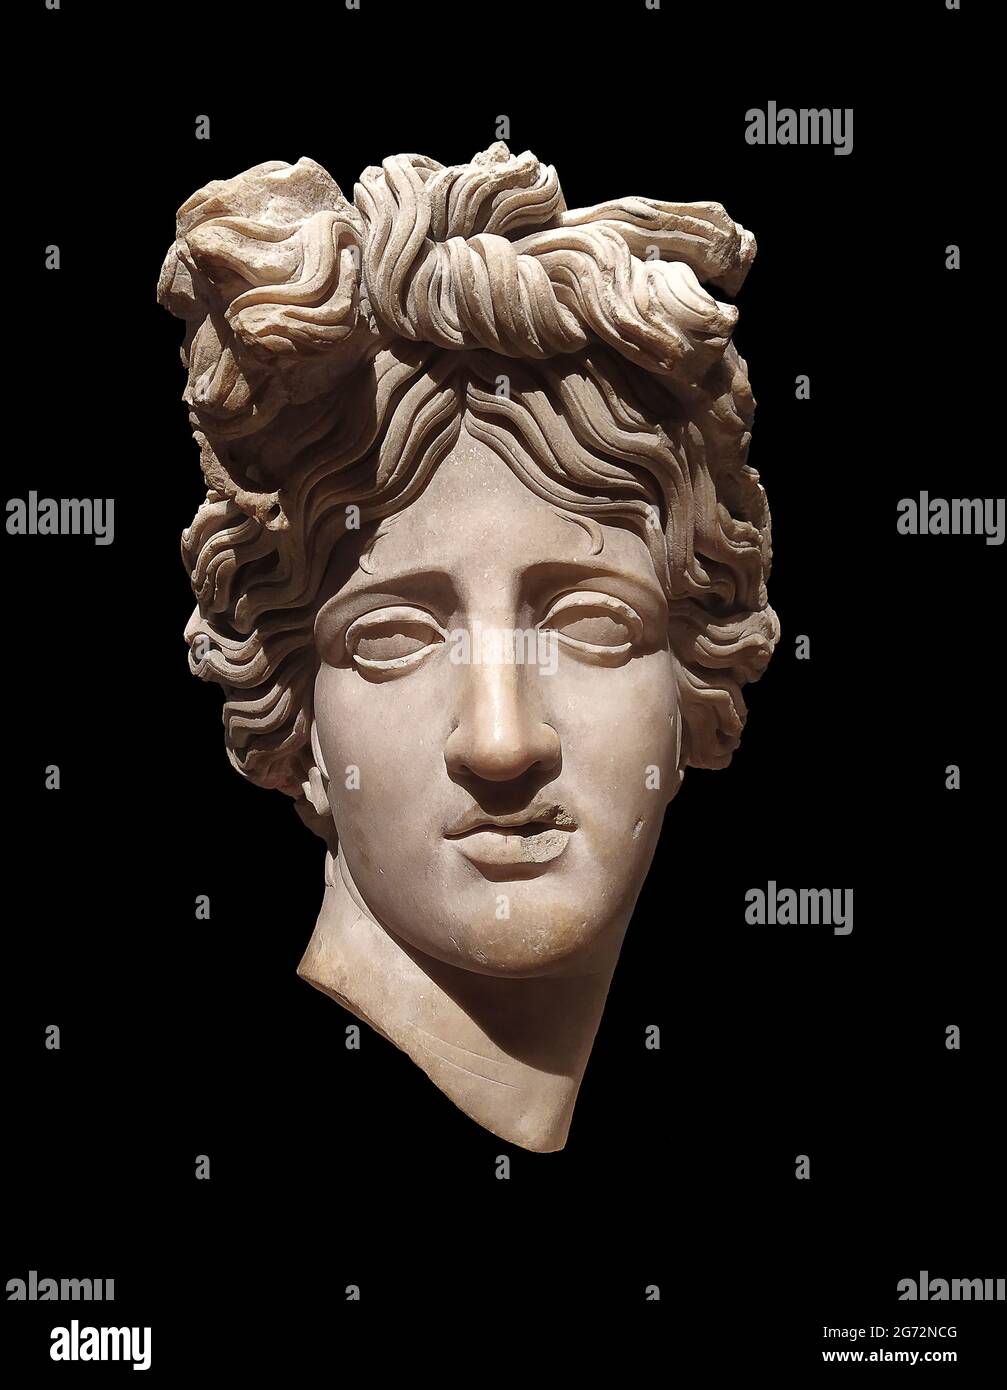 Testa di marmo del dio romano Apollo, trovato a Roma, Italia. ii secolo. Foto Stock